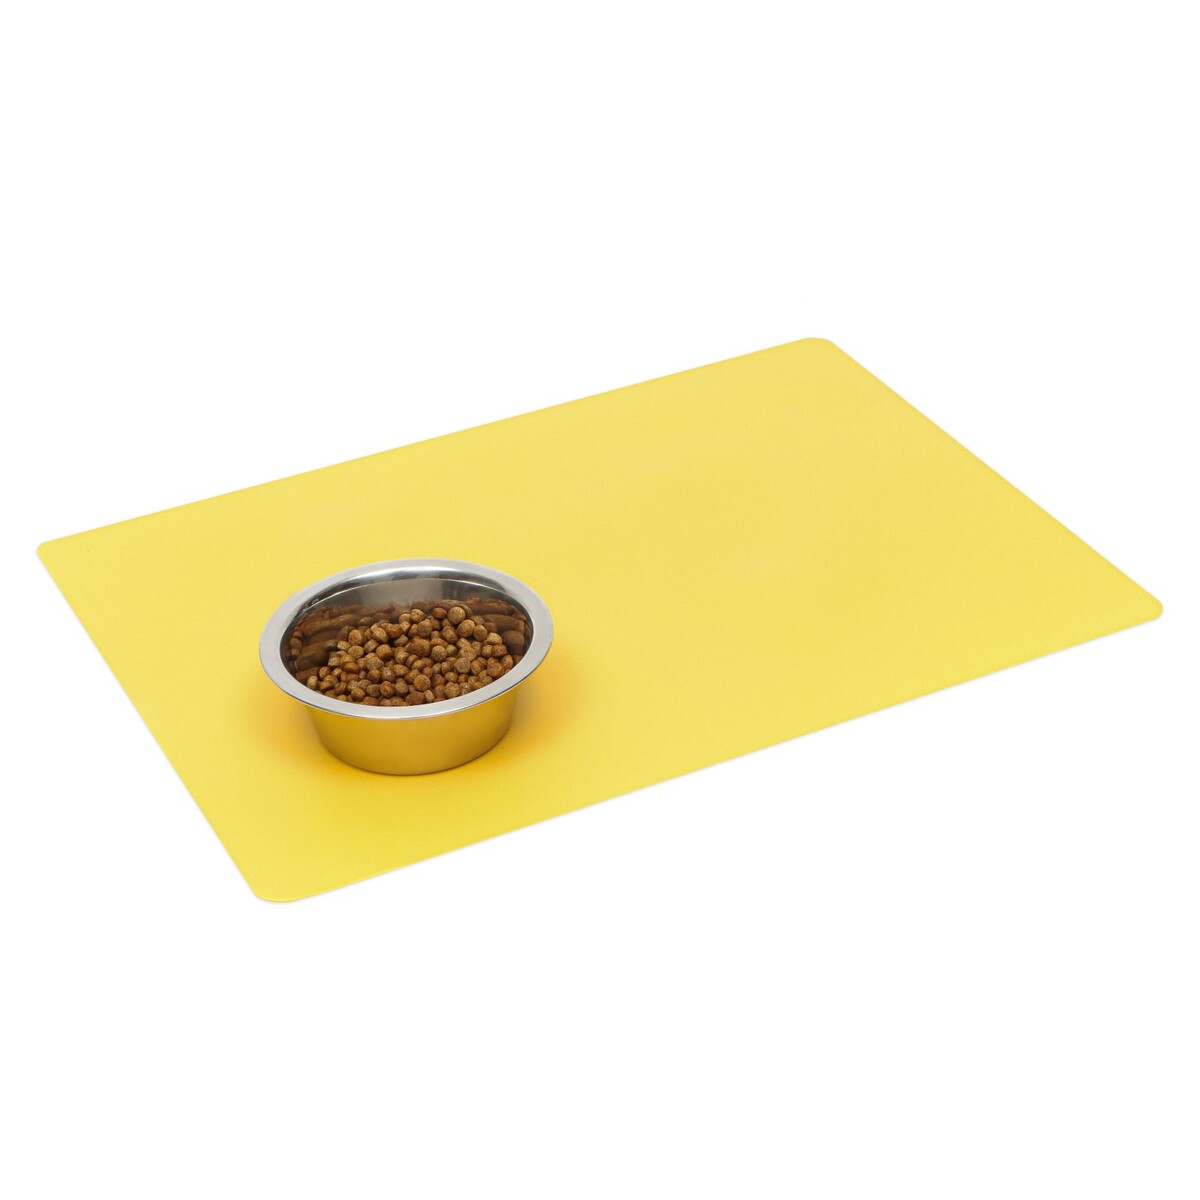 Коврик силиконовый под миску, 40 х 30 см, желтый коврик силиконовый под миску с текстурой 48 х 30 см мятный